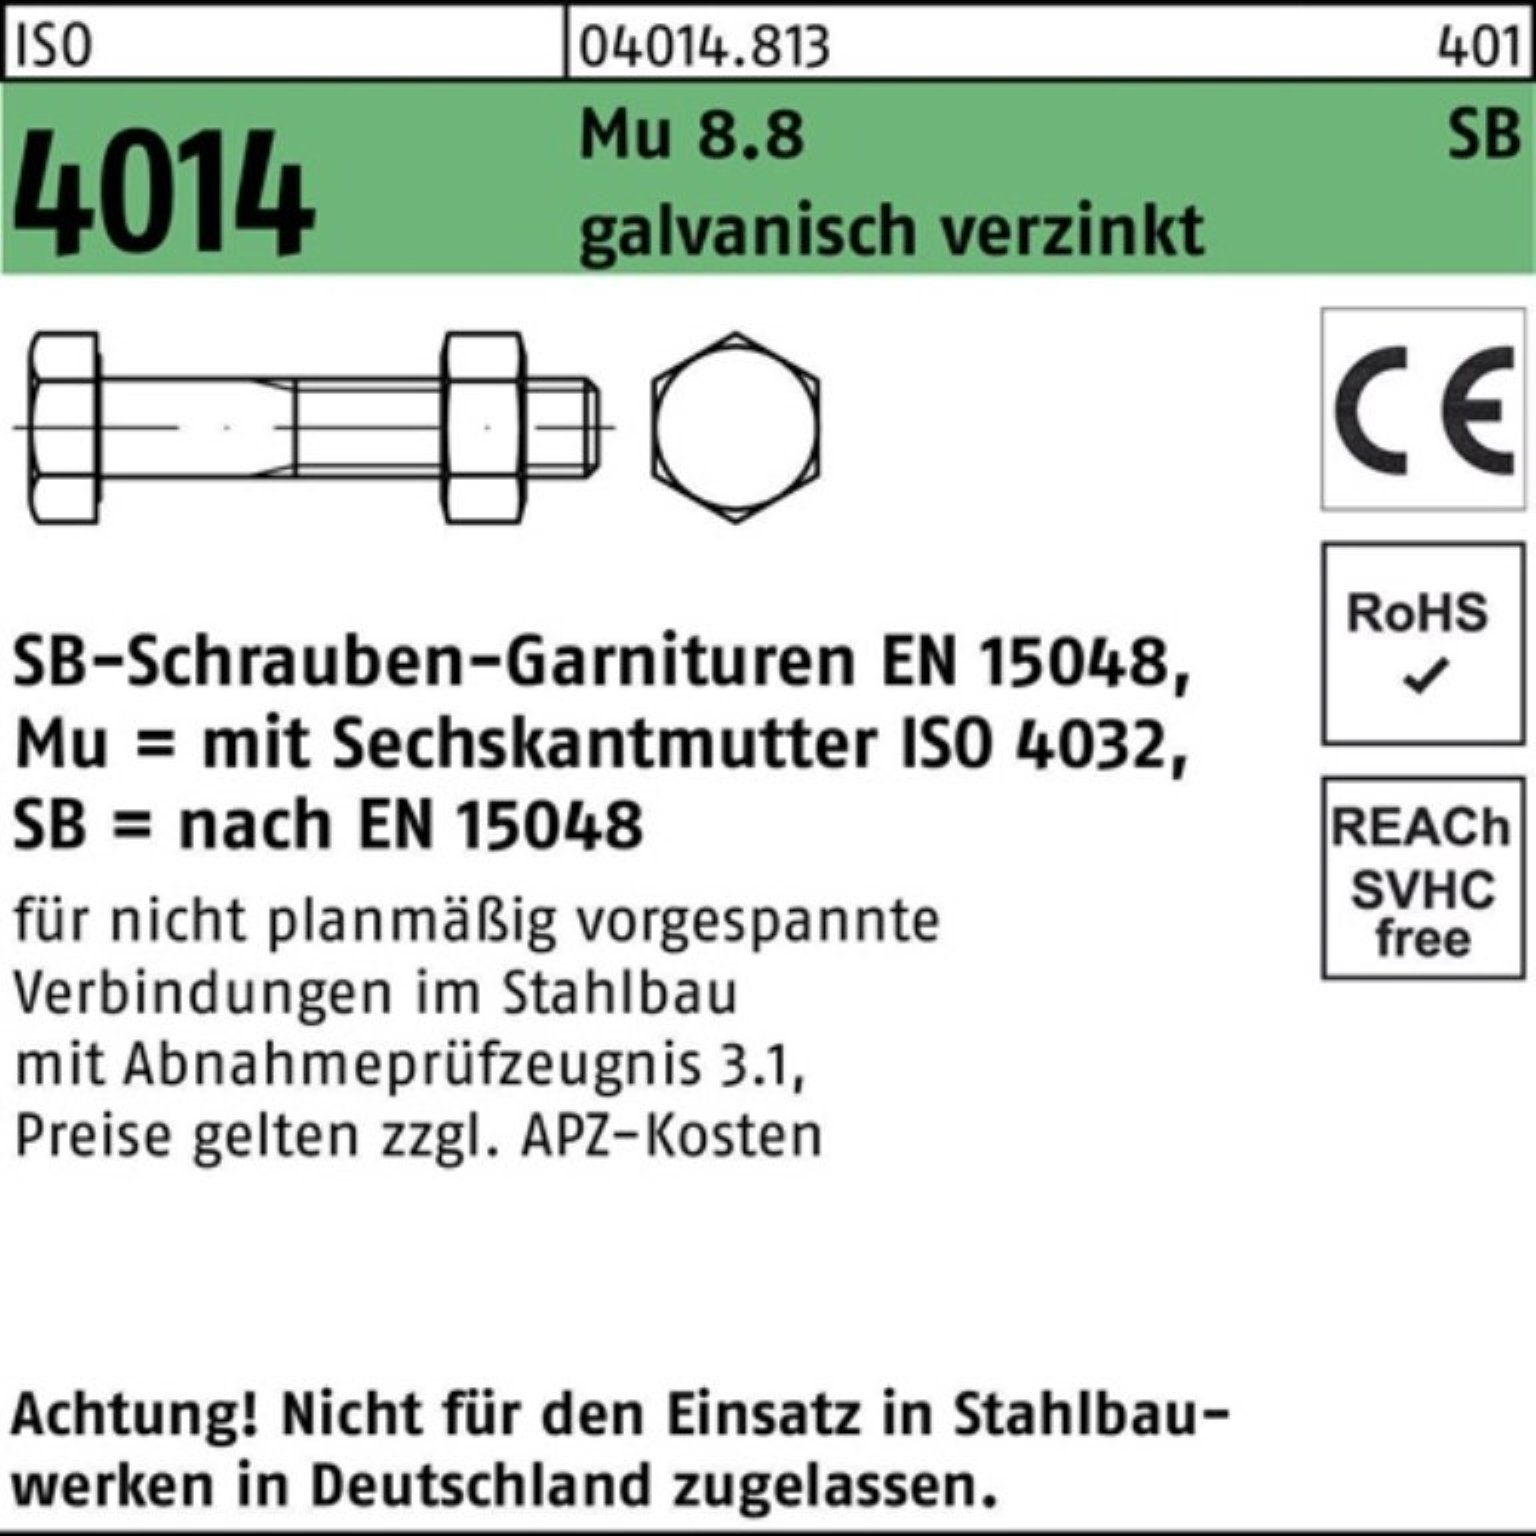 Sechskantschraube 8.8 Bufab Mu M10x50 4014 Sechskantschraube Pack ISO Schaft/Mutter 100er galv